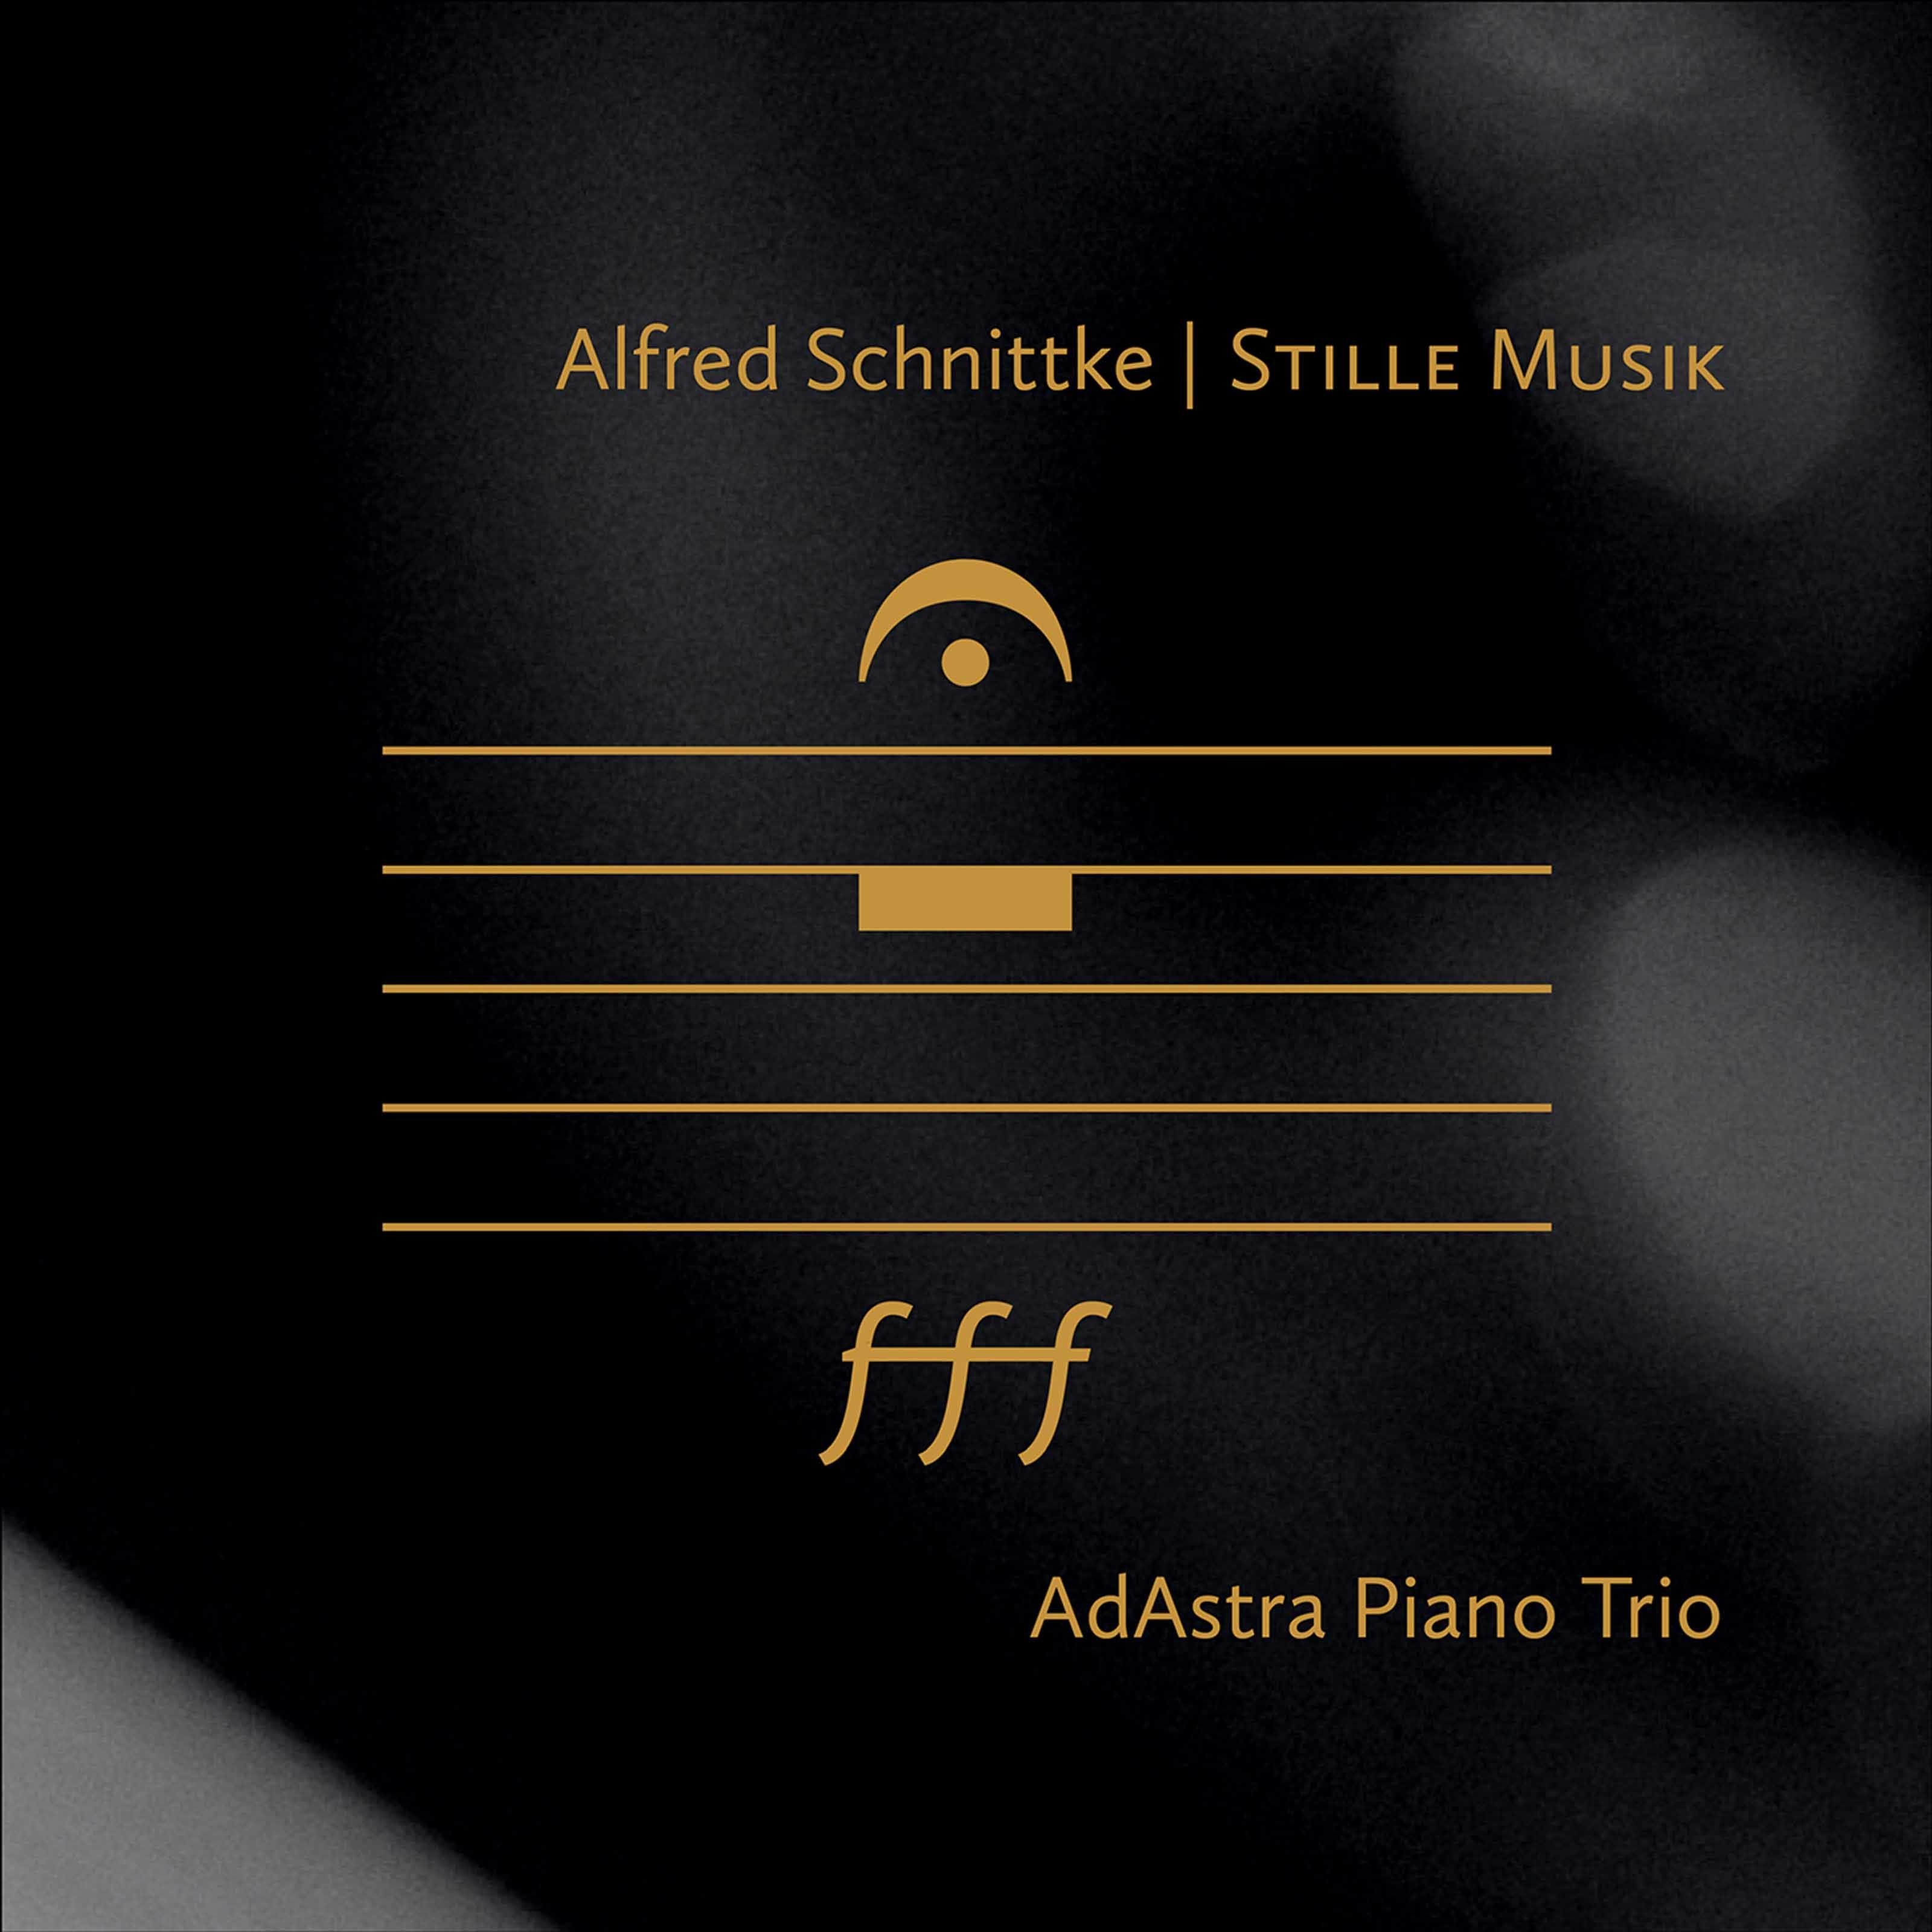 AdAstra Piano Trio – Alfred Schnittke: Stille Musik (2021) [FLAC 24bit/44,1kHz]